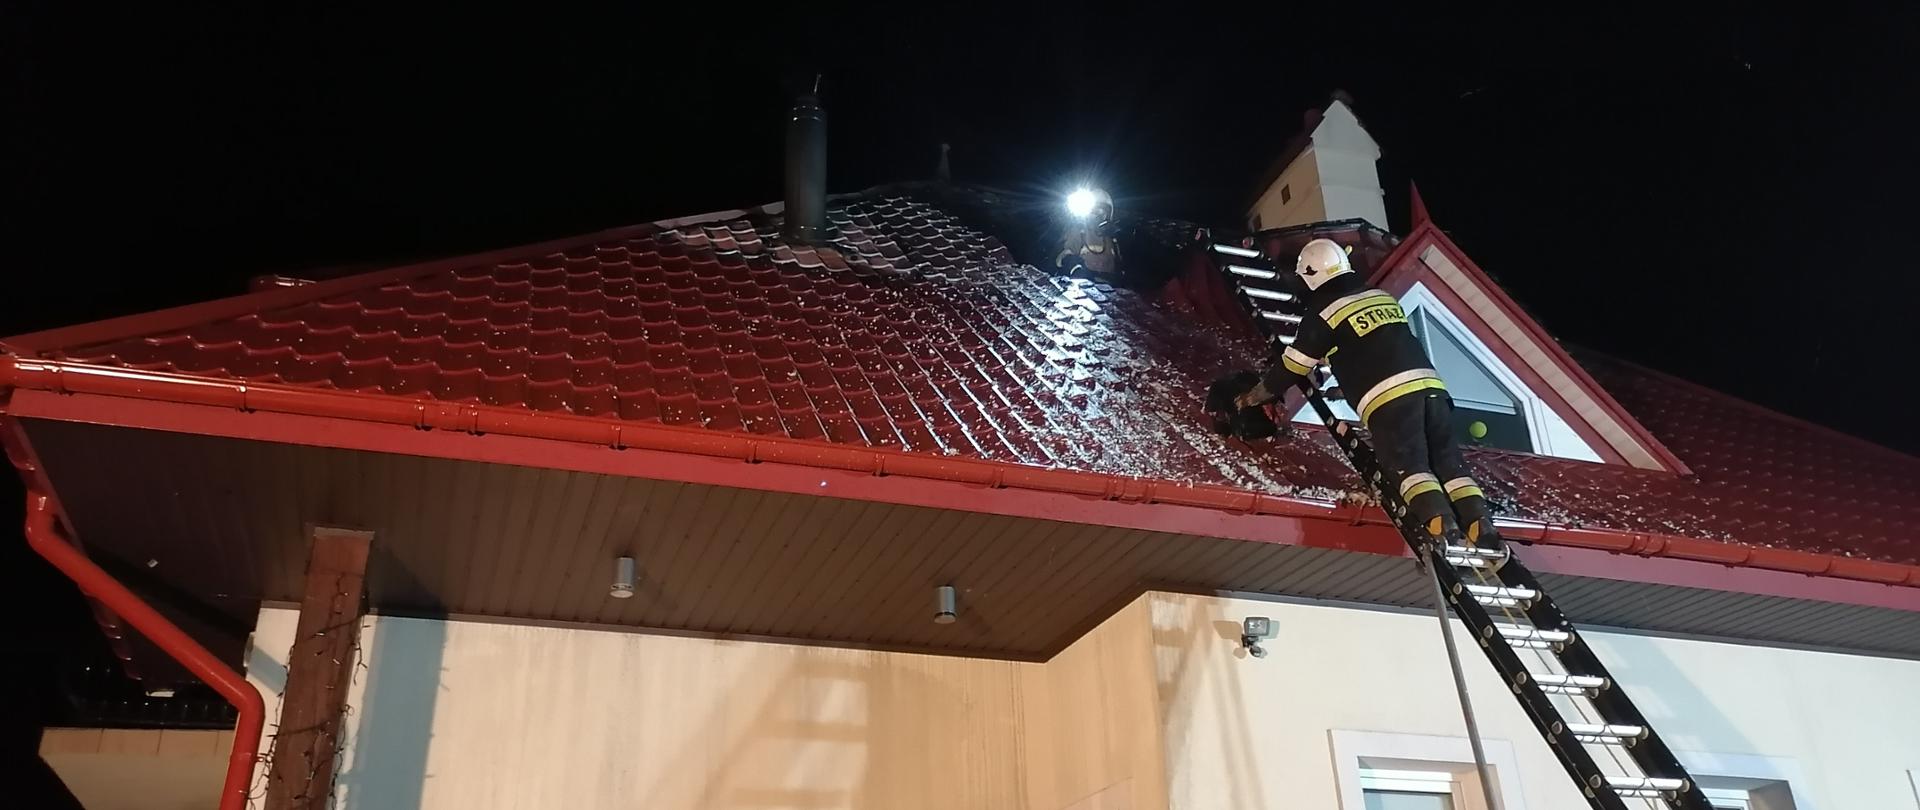 Na zdjęciu widać budynek jednorodzinny z uszkodzonym w wyniku pożaru dachem pokrytym blachodachówką. Do ściany budynku przystawiona jest drabina pożarnicza, na której pracuje strażak OSP, ubrany w ubranie specjalne. Z dziury na dachu widać strażaka OSP w umundurowaniu specjalnym.